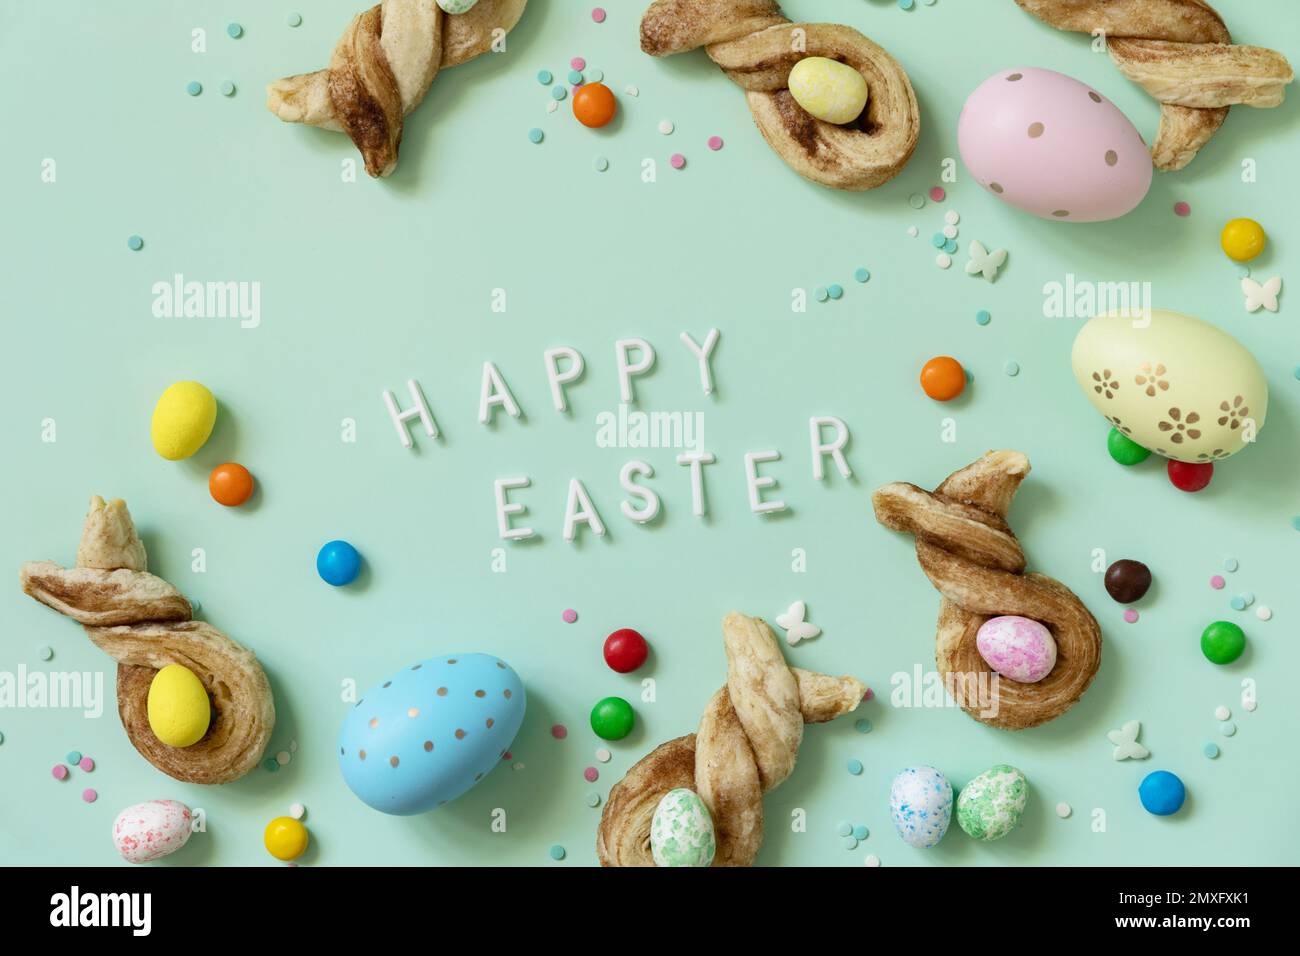 Joyeuses Pâques. Colore les œufs de Pâques avec des petits pains en forme de lapin de Pâques, pâte feuilletée à la cannelle sur fond vert pastel. Vue de dessus. Banque D'Images